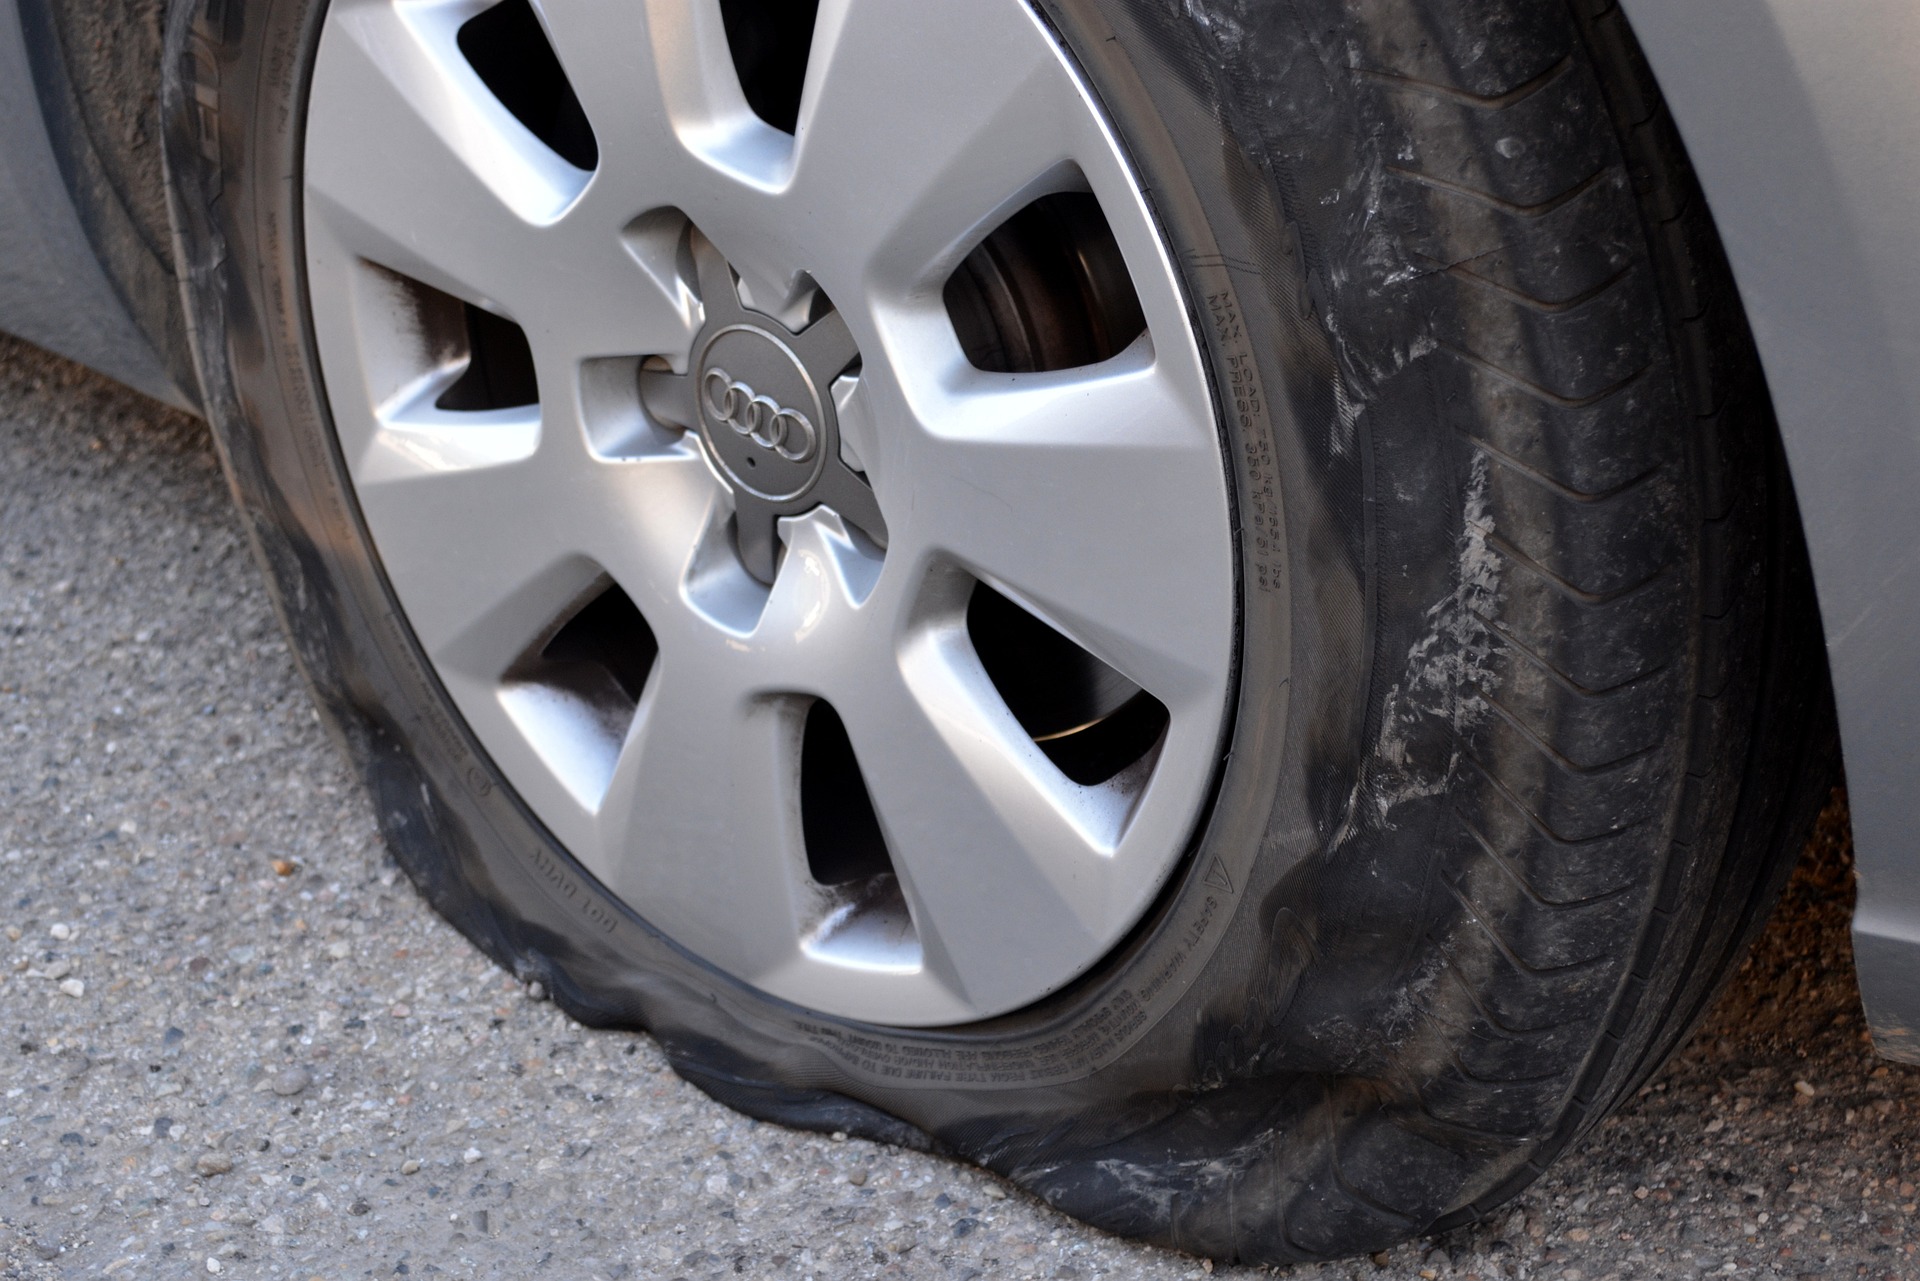 Wie verwendet man ein Reifenpannenset?, VW, Tipps & Tricks